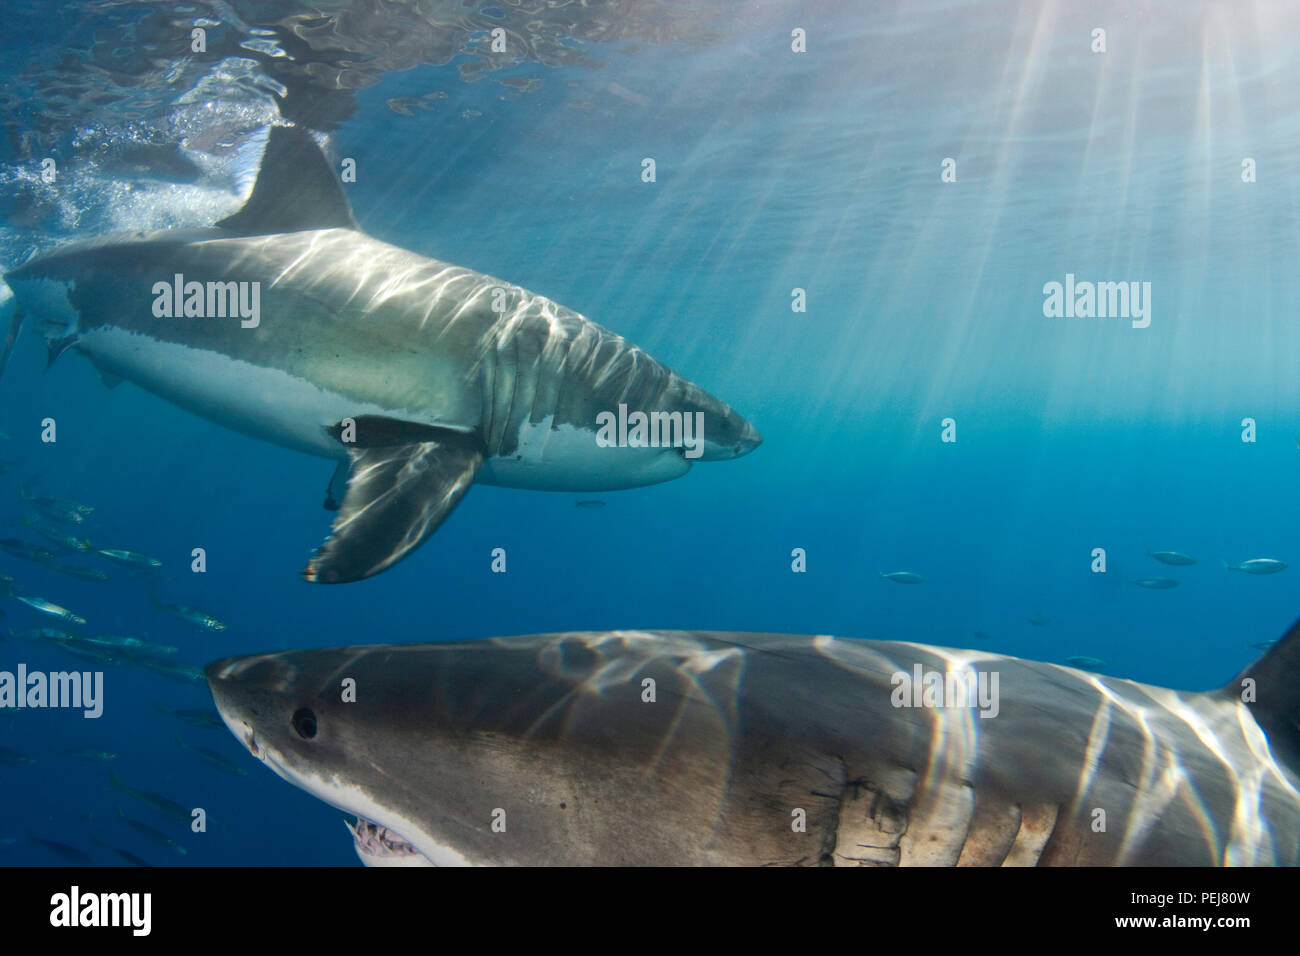 Ces deux grand requin blanc, Carcharodon carcharias, ont été photographiés sous la surface au large de l'île de Guadalupe, au Mexique. Banque D'Images